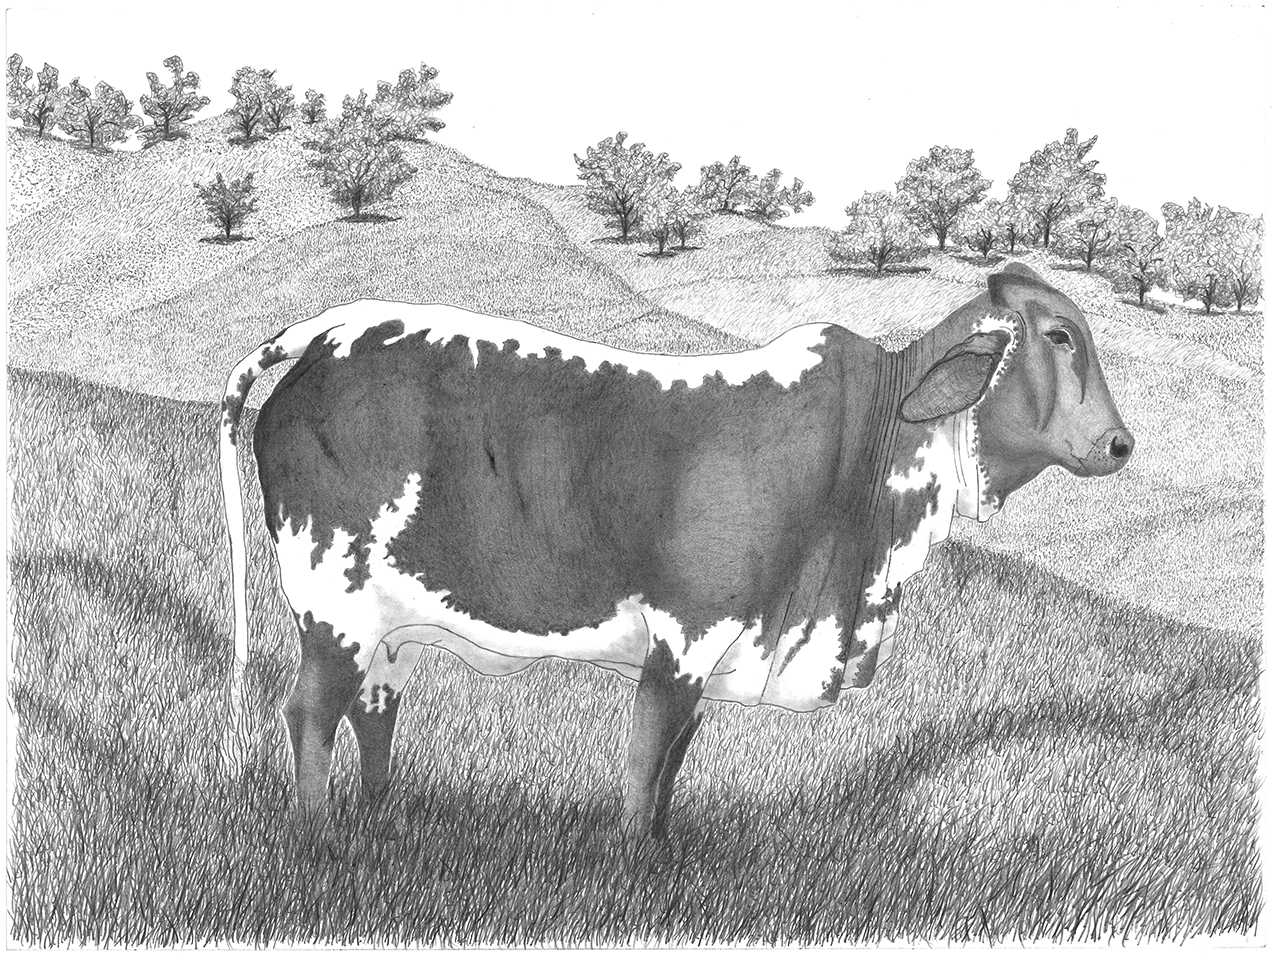 Vache noire et blanche - Amagá, 2020